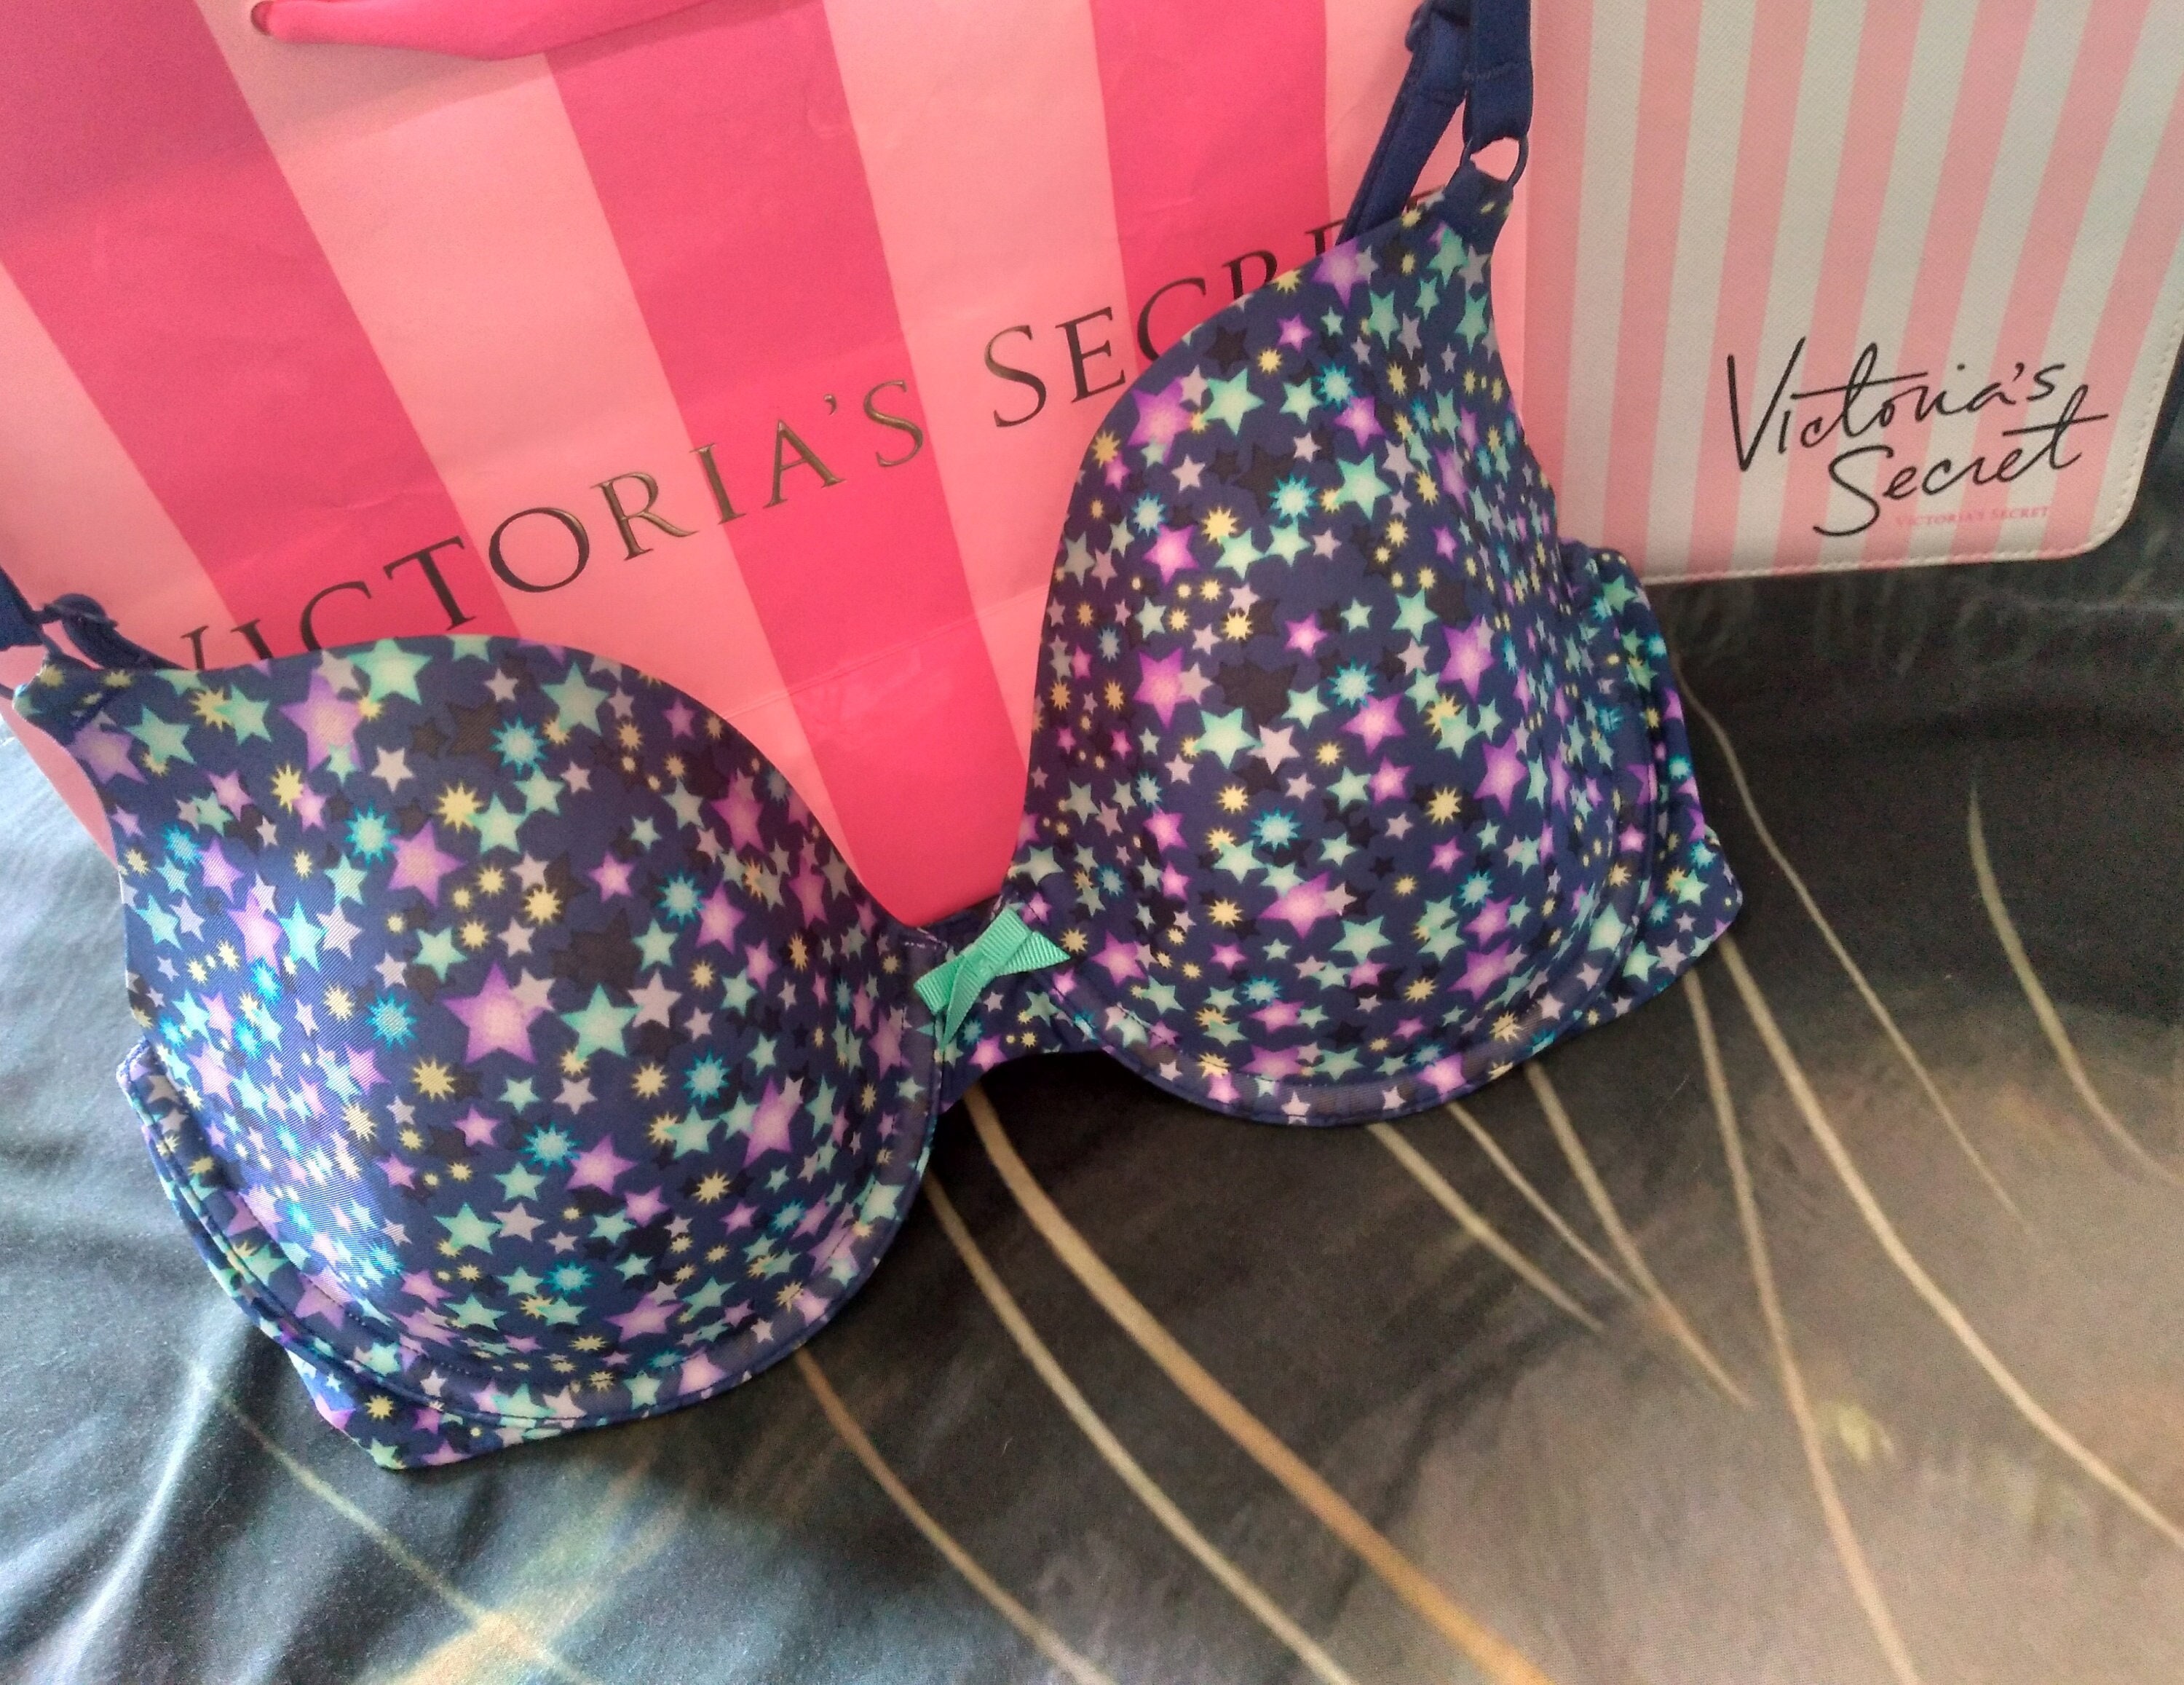 Victoria Secret Bra Set 34C Push Up Small Cheeky Panty Black Lace Floral  Appliqu